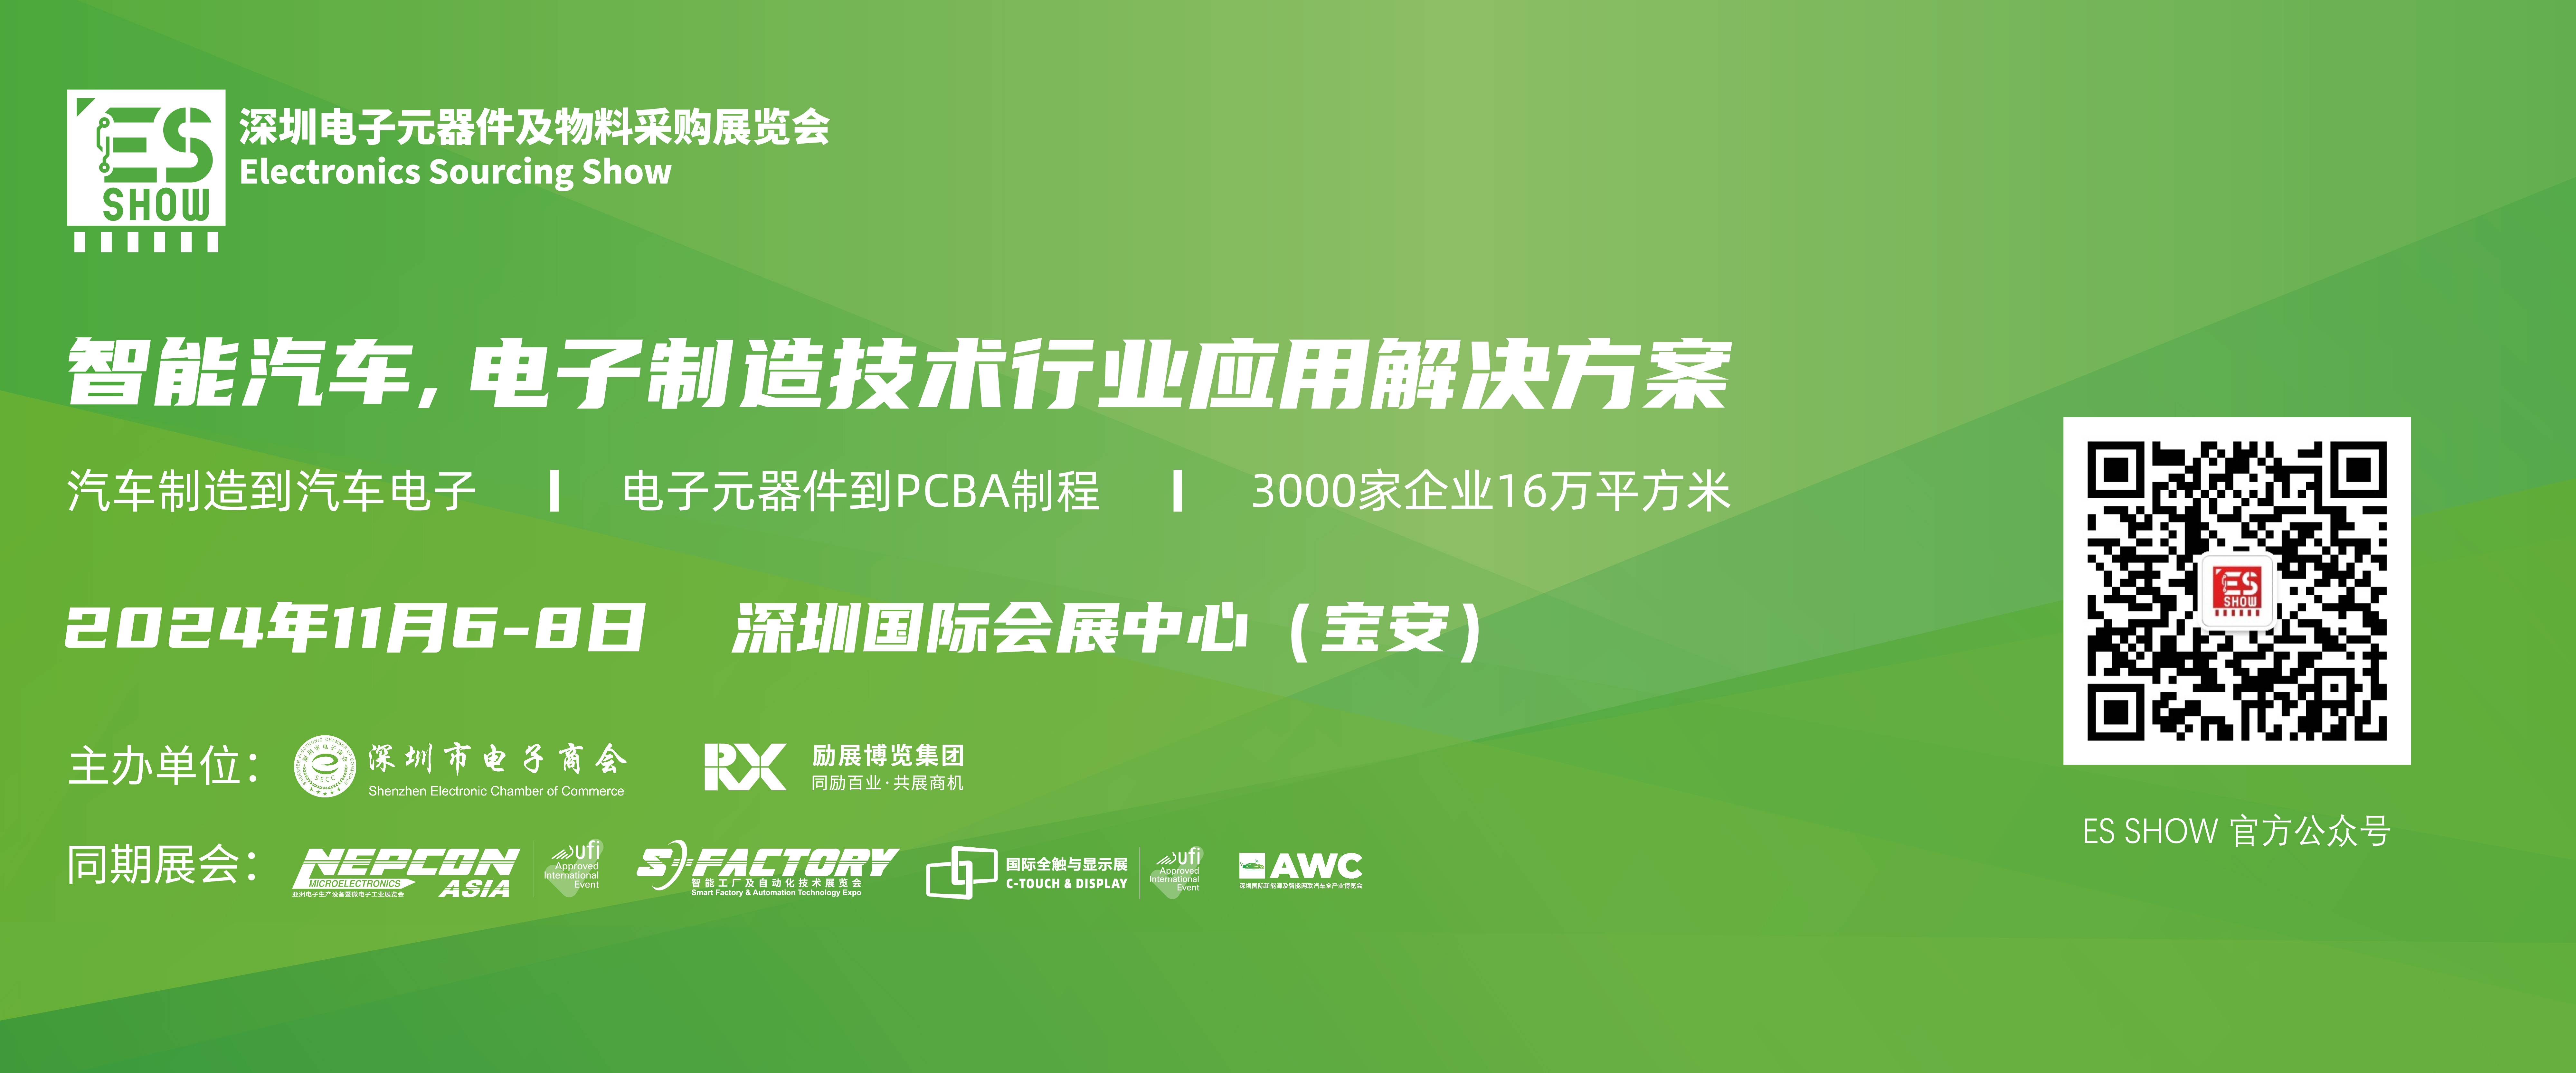 GPU 深圳电子展 华南电子展 大模型 中国电子展